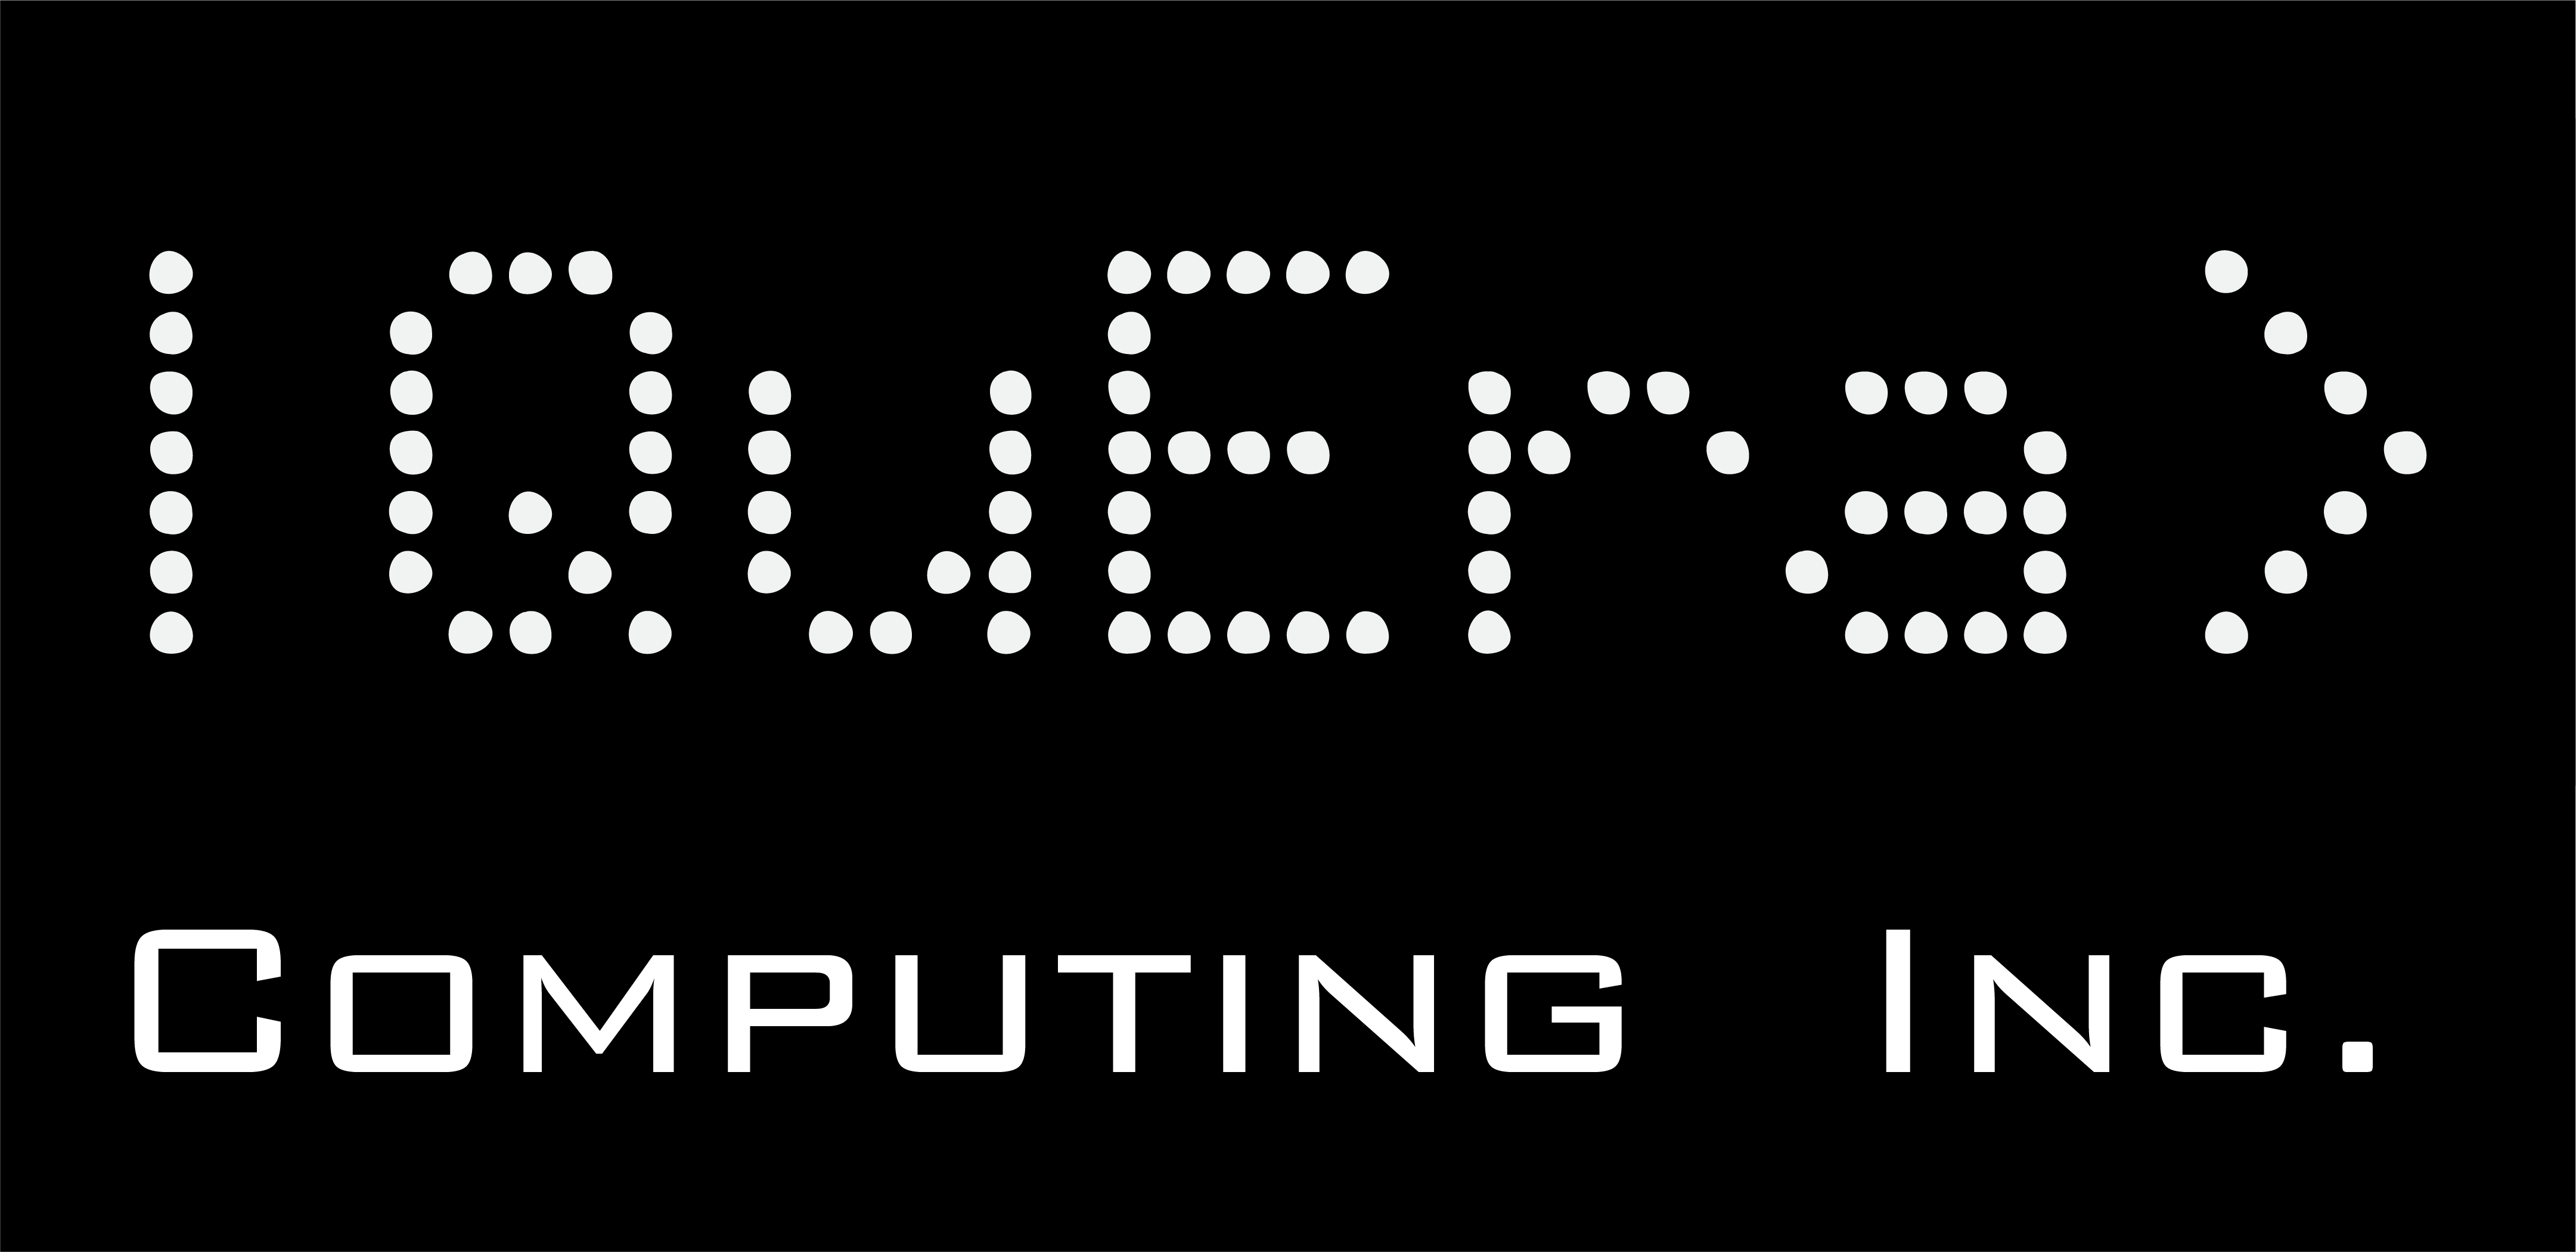 QuEra Computing تخرج من الخفاء بمبلغ 17 مليون دولار لإطلاق جهاز كمي